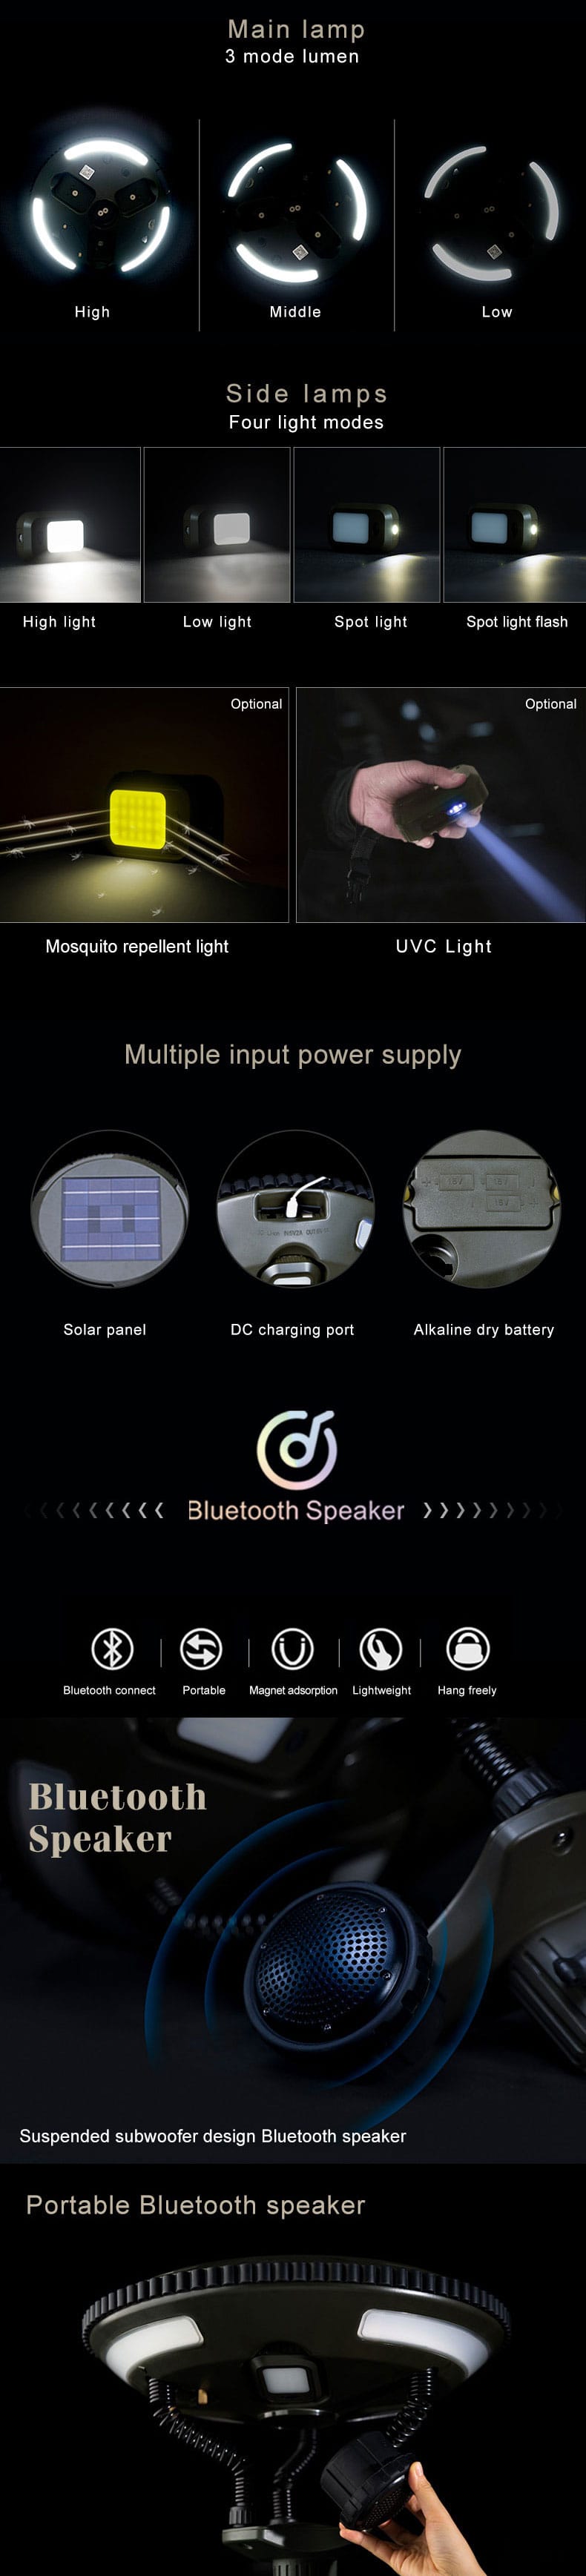 Kamplig met Bluetooth-luidspreker (2)